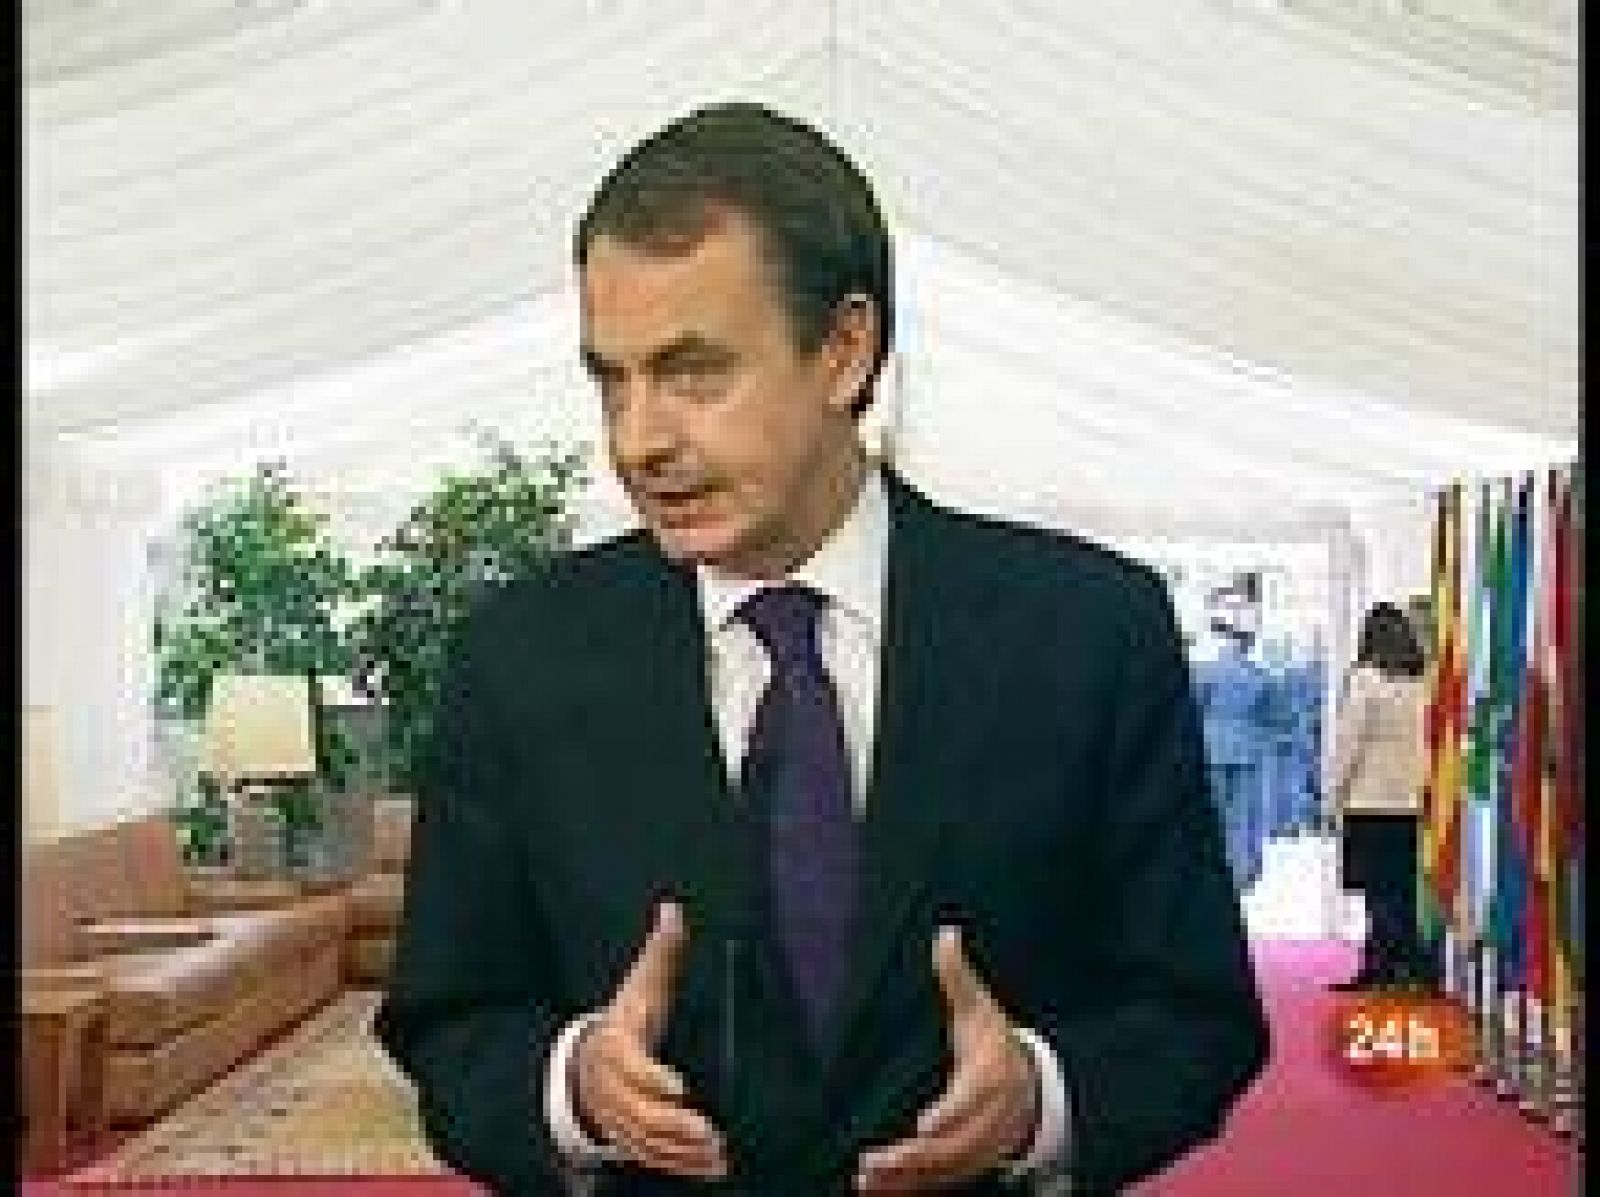  El presidente del Gobierno, José Luis Rodríguez Zapatero, defiende la actuación del Ejecutivo en el 'caso Haidar' tras las críticas del PP, Mariano Rajoy, que acusa al Gobierno de "haber tirado la toalla",